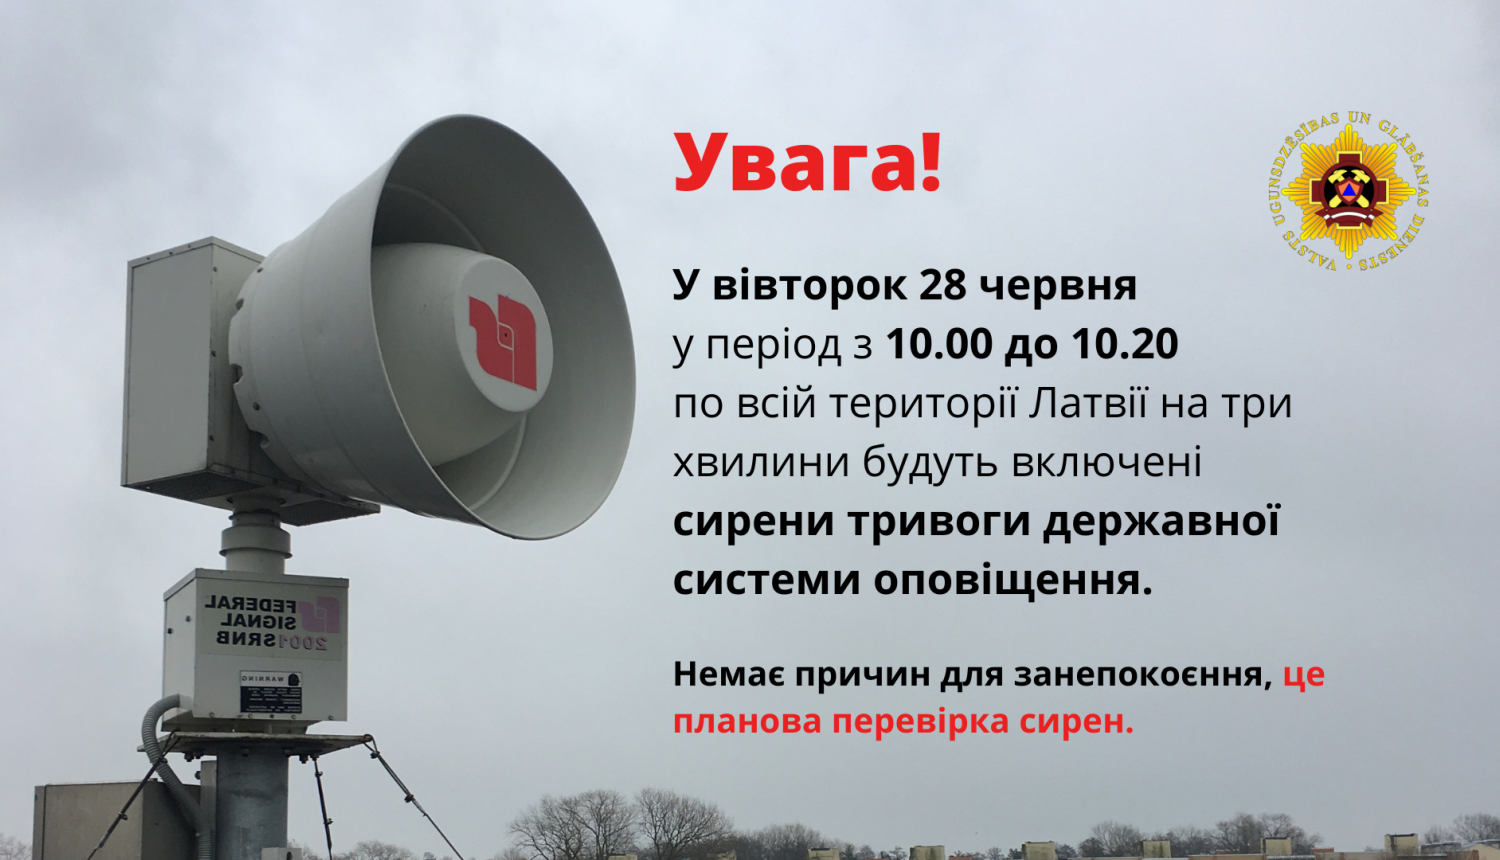 Vizuāli informatīvs paziņojums ukraiņu valodā par plānoto kārtējo trauksmes sirēnu pārbaudi